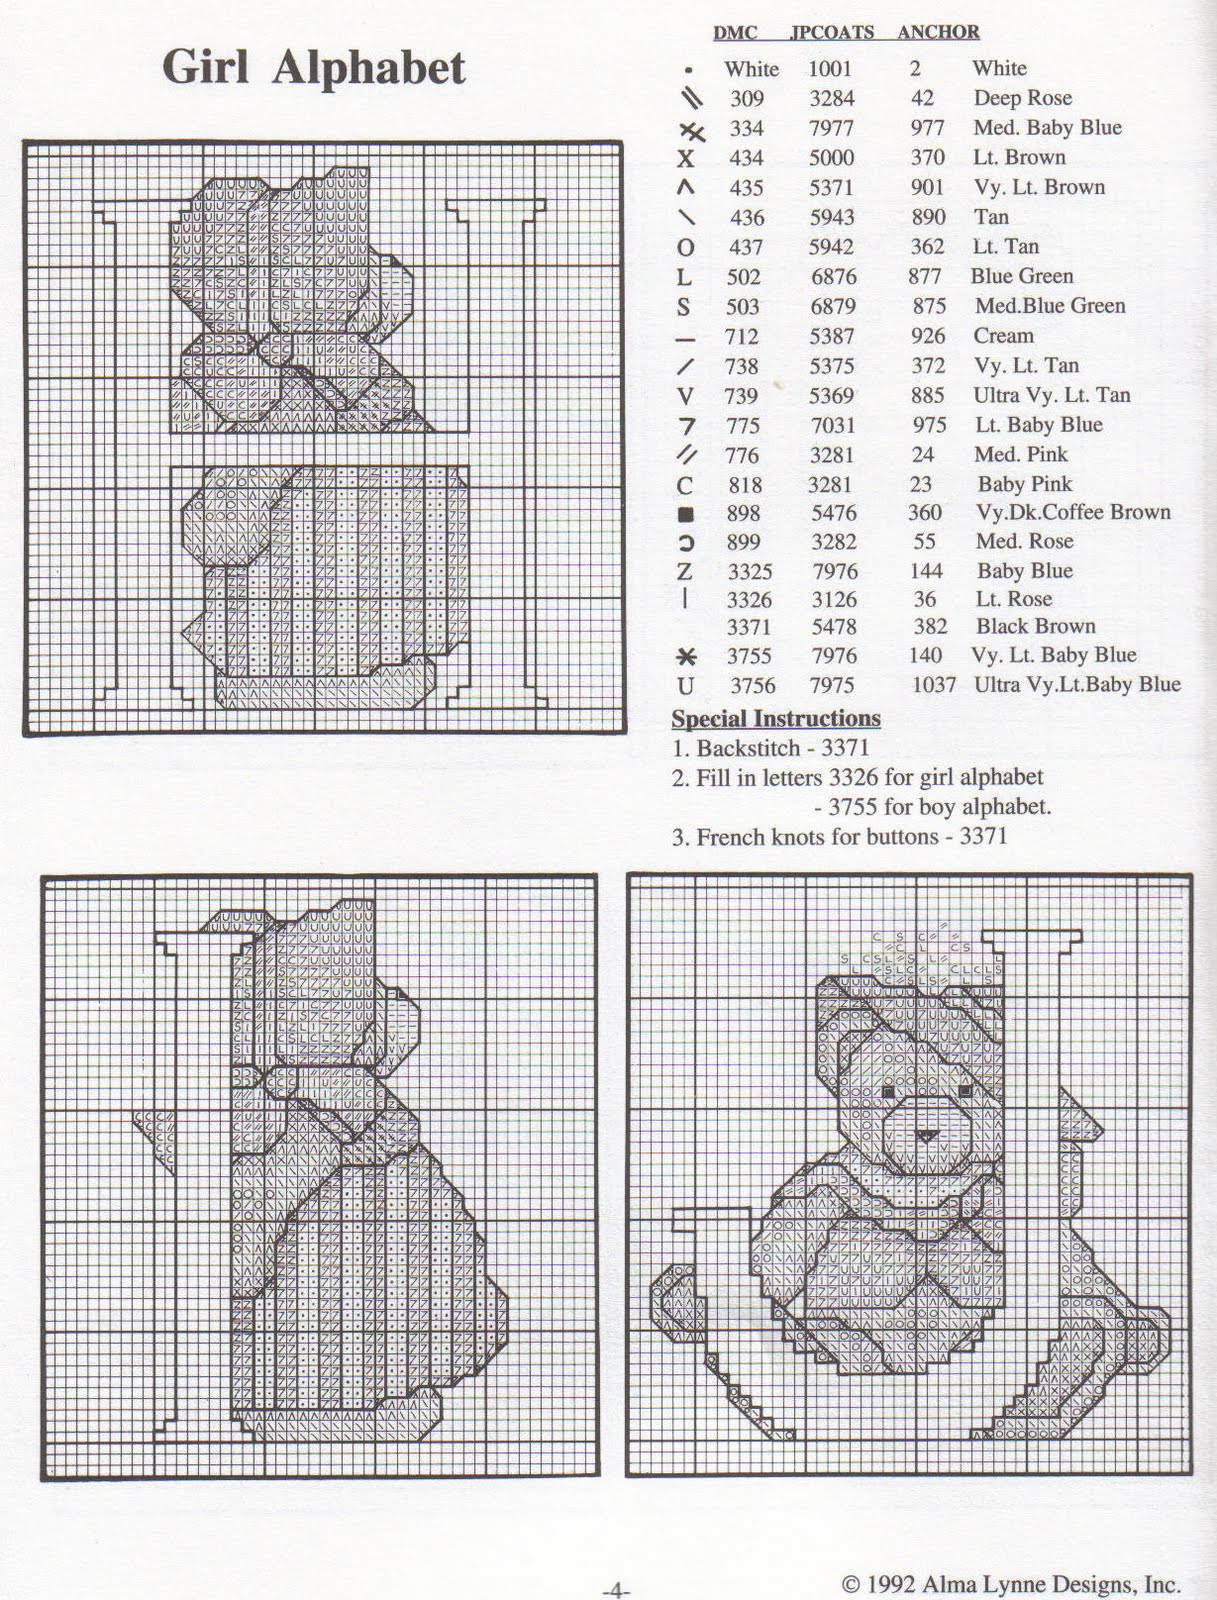 Cross stitch alphabet with sweet teddy bears (6)